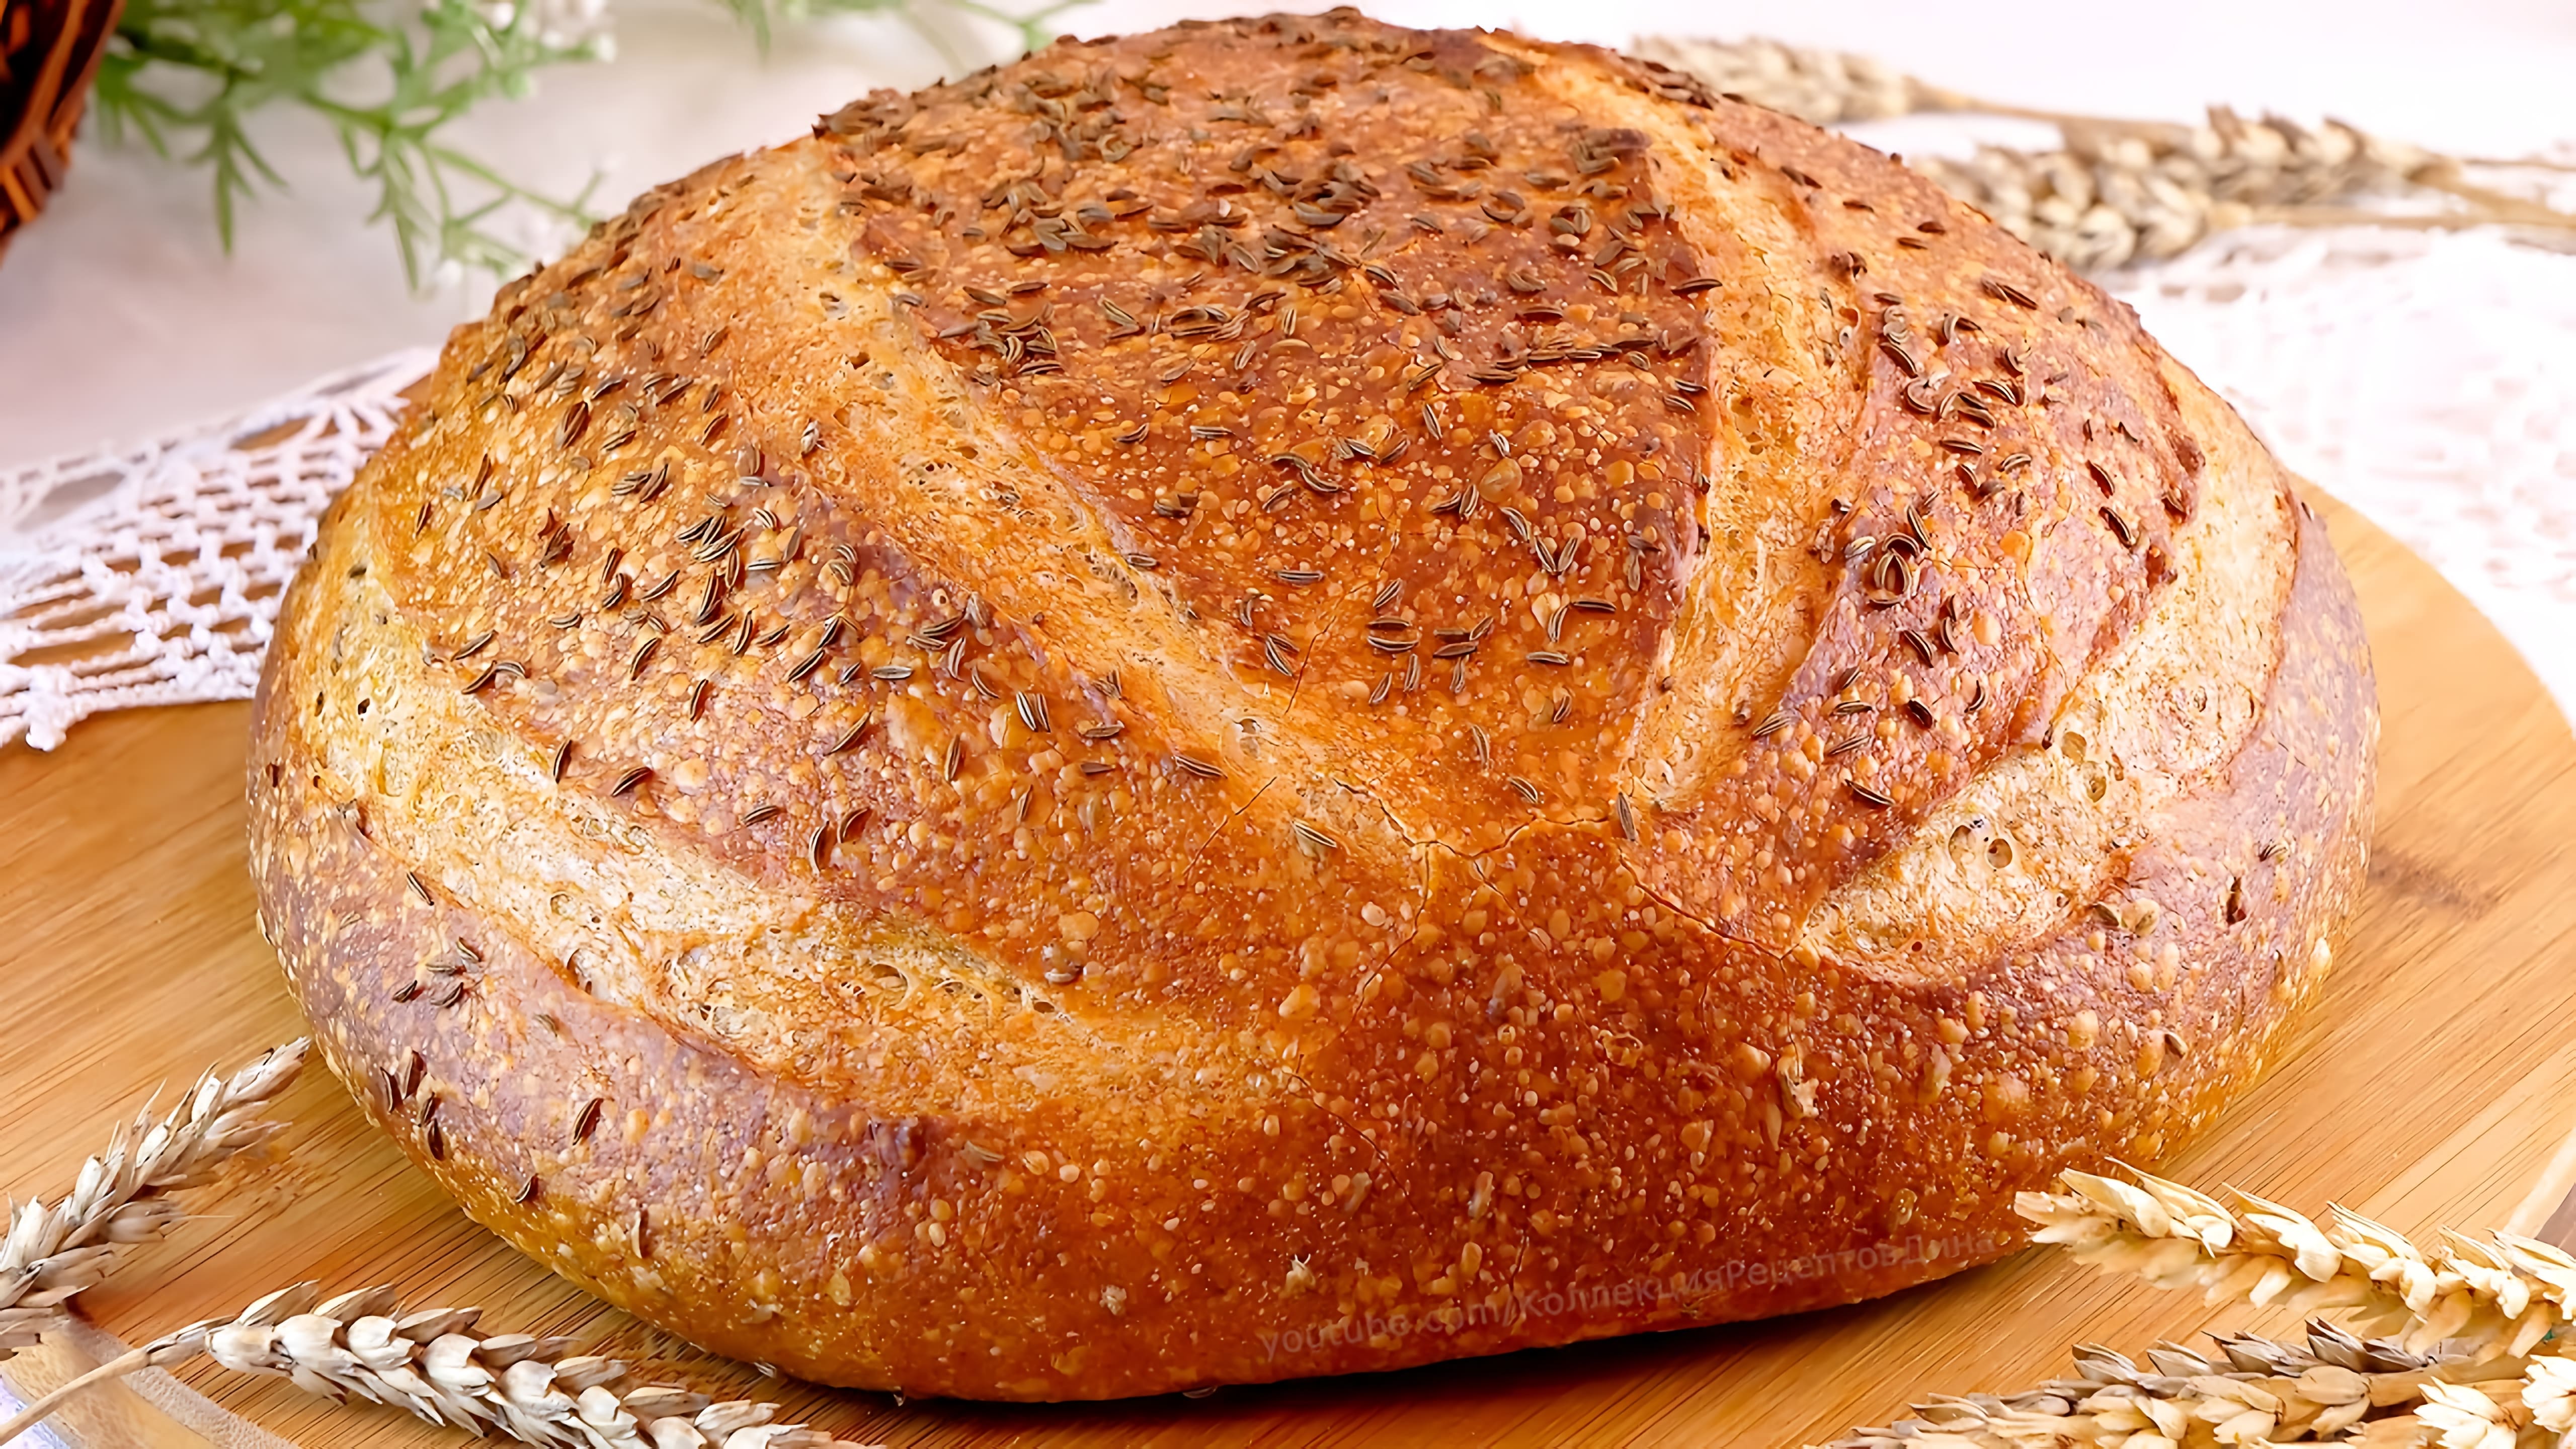 Видео: Пшенично-ржаной хлеб с тмином на ржаной закваске! Рецепт вкусного домашнего хлеба!